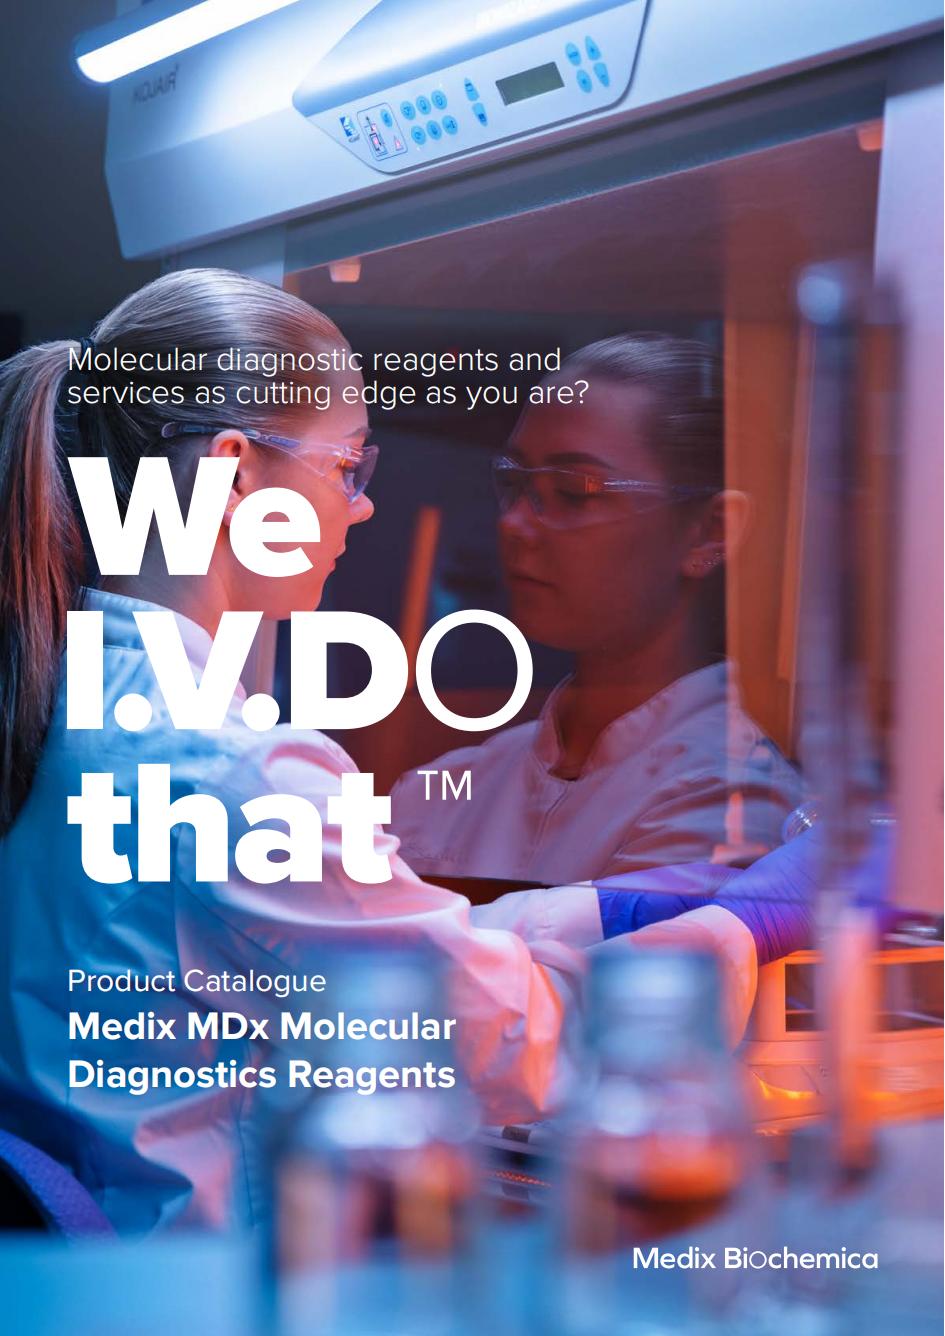 MedixMDx Molecular Diagnostics Reagents - Catalogue